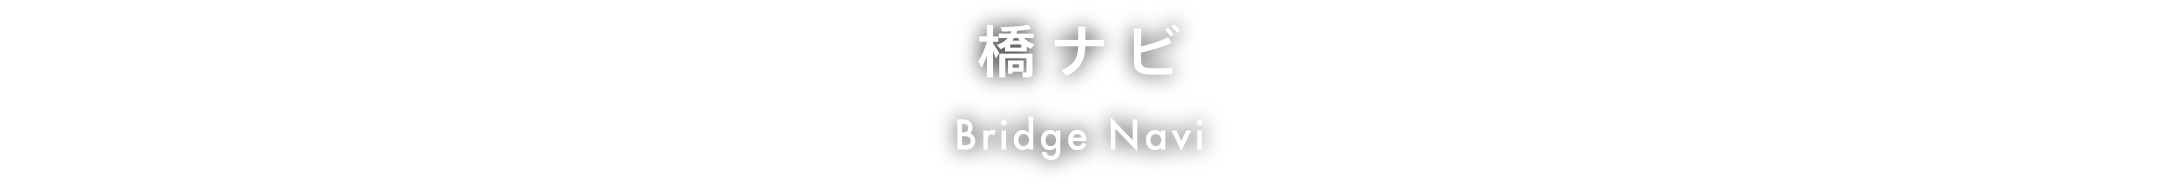 橋ナビ Bridge Navi